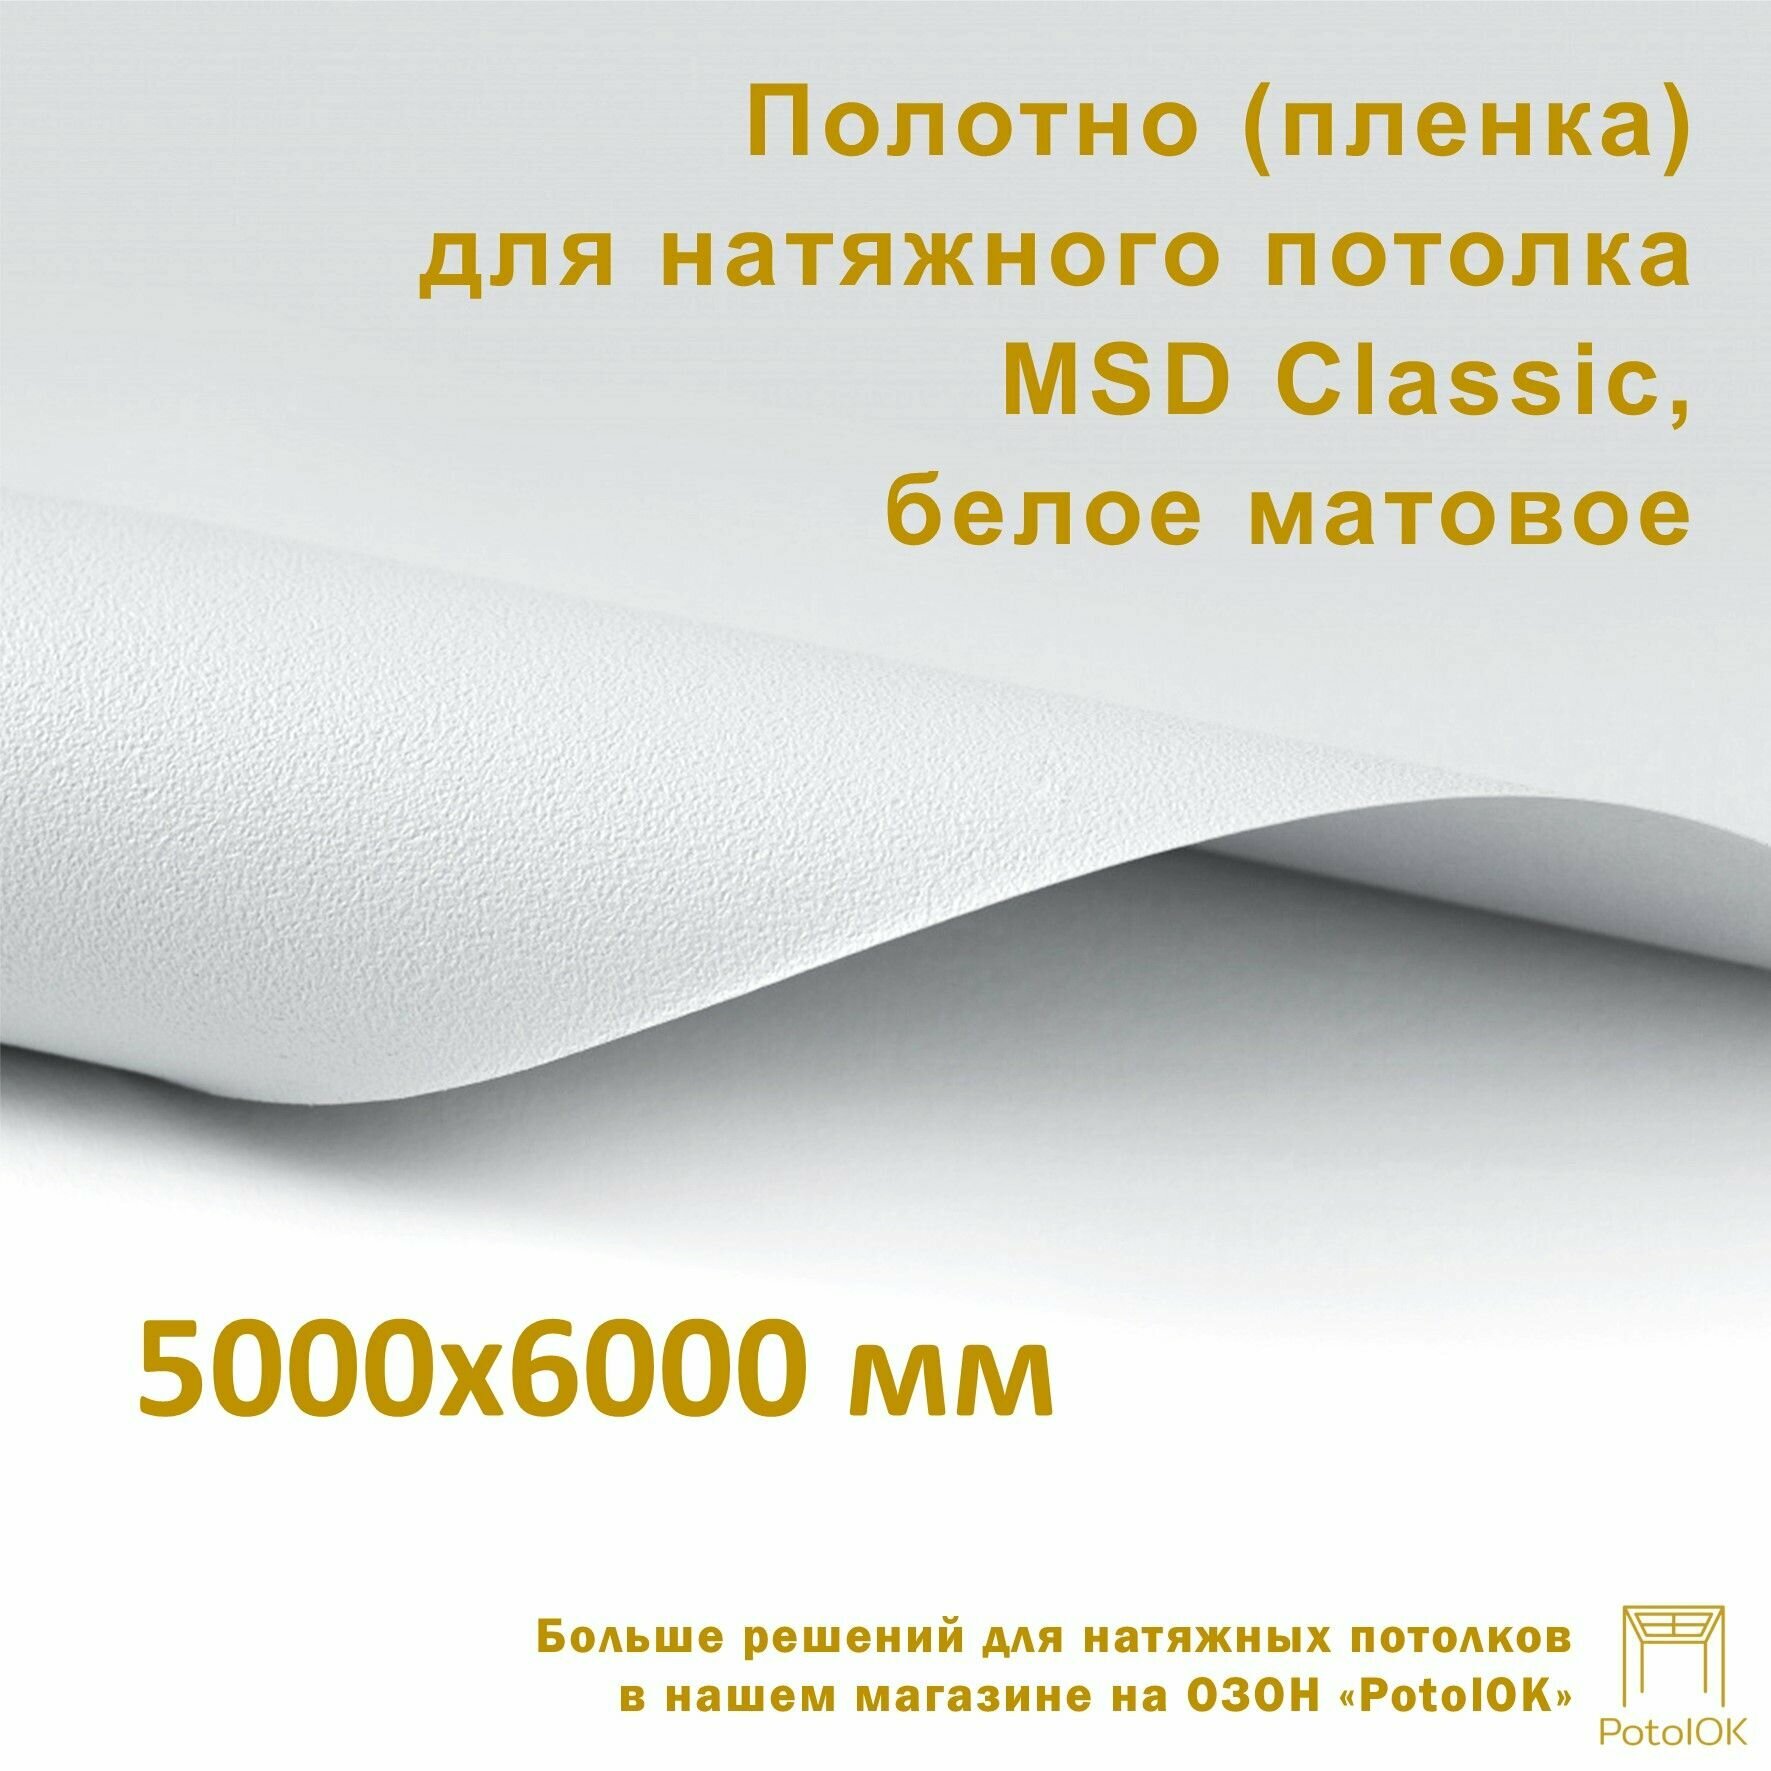 Полотно (пленка) для натяжного потолка MSD CLASSIC, белое матовое, 5000x6000 мм